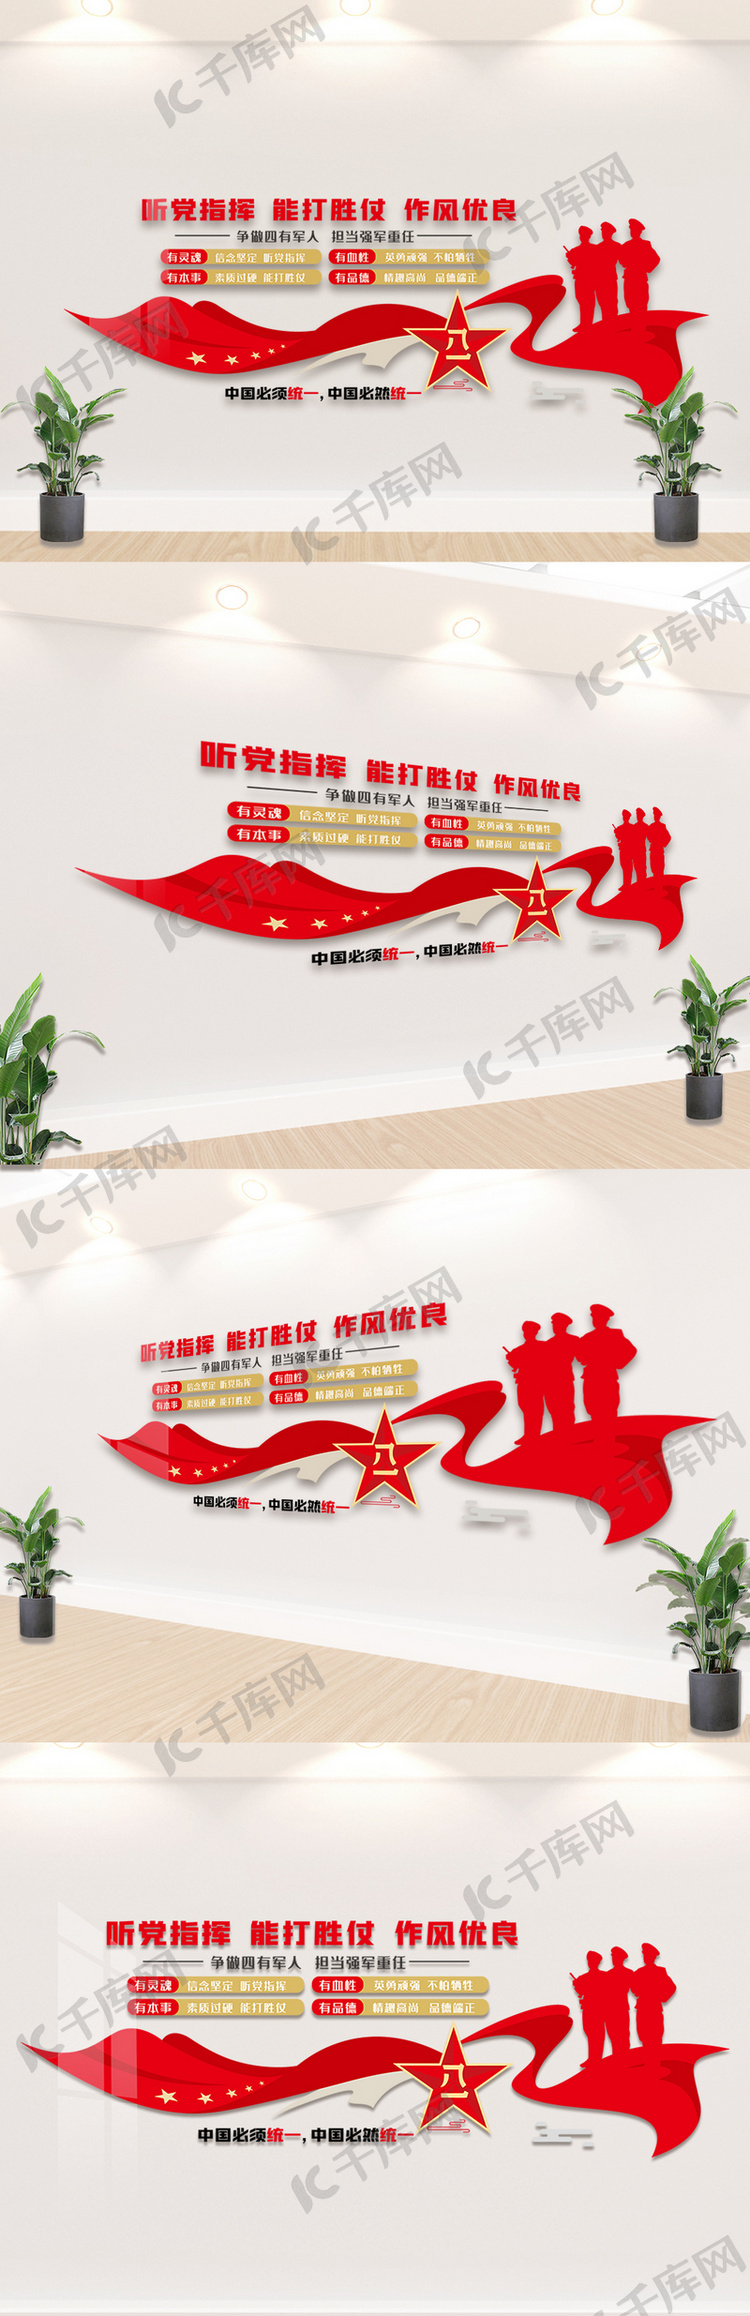 红色大气部队党建文化墙设计模板图